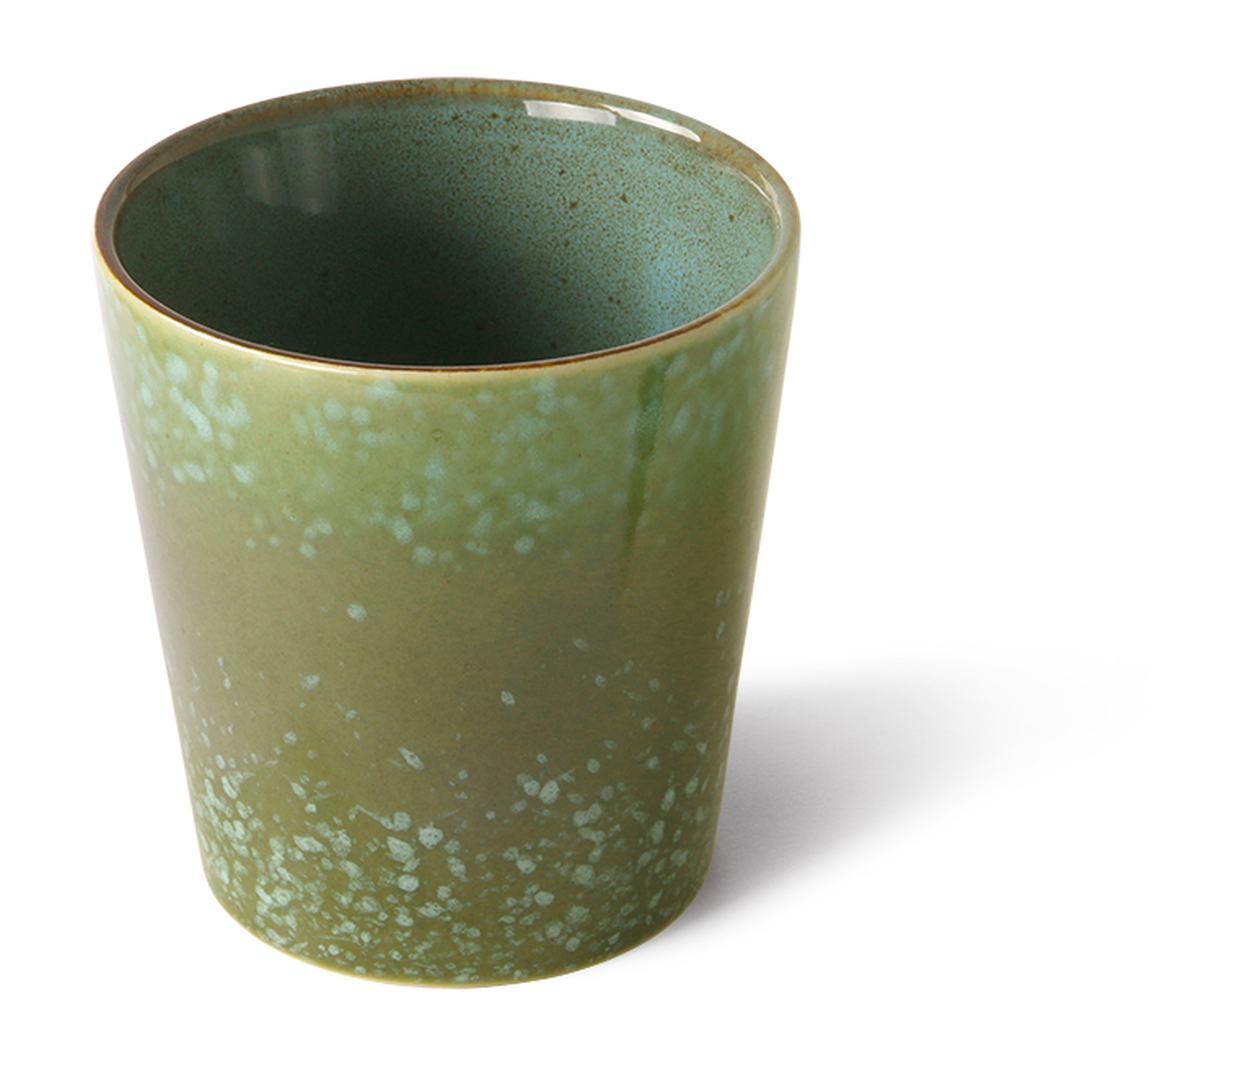 70s ceramics: coffee mug, grass